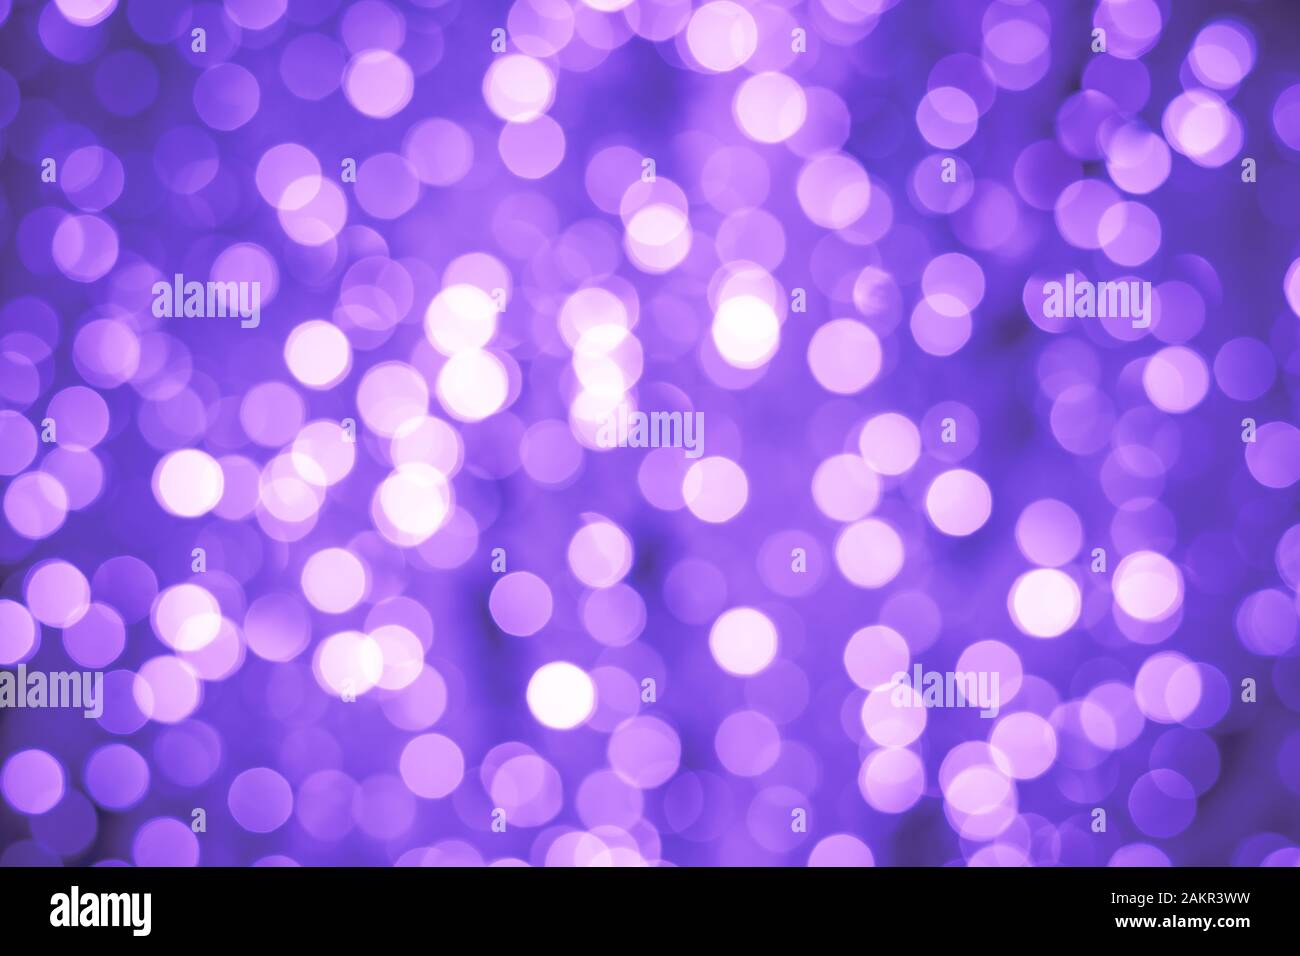 Abstrakter Bokeh-Hintergrund. Verschwommene Kulisse mit beleuchtetem Effekt. Violette Nachtlichter, funkelnde glänzende Kreise Stockfoto